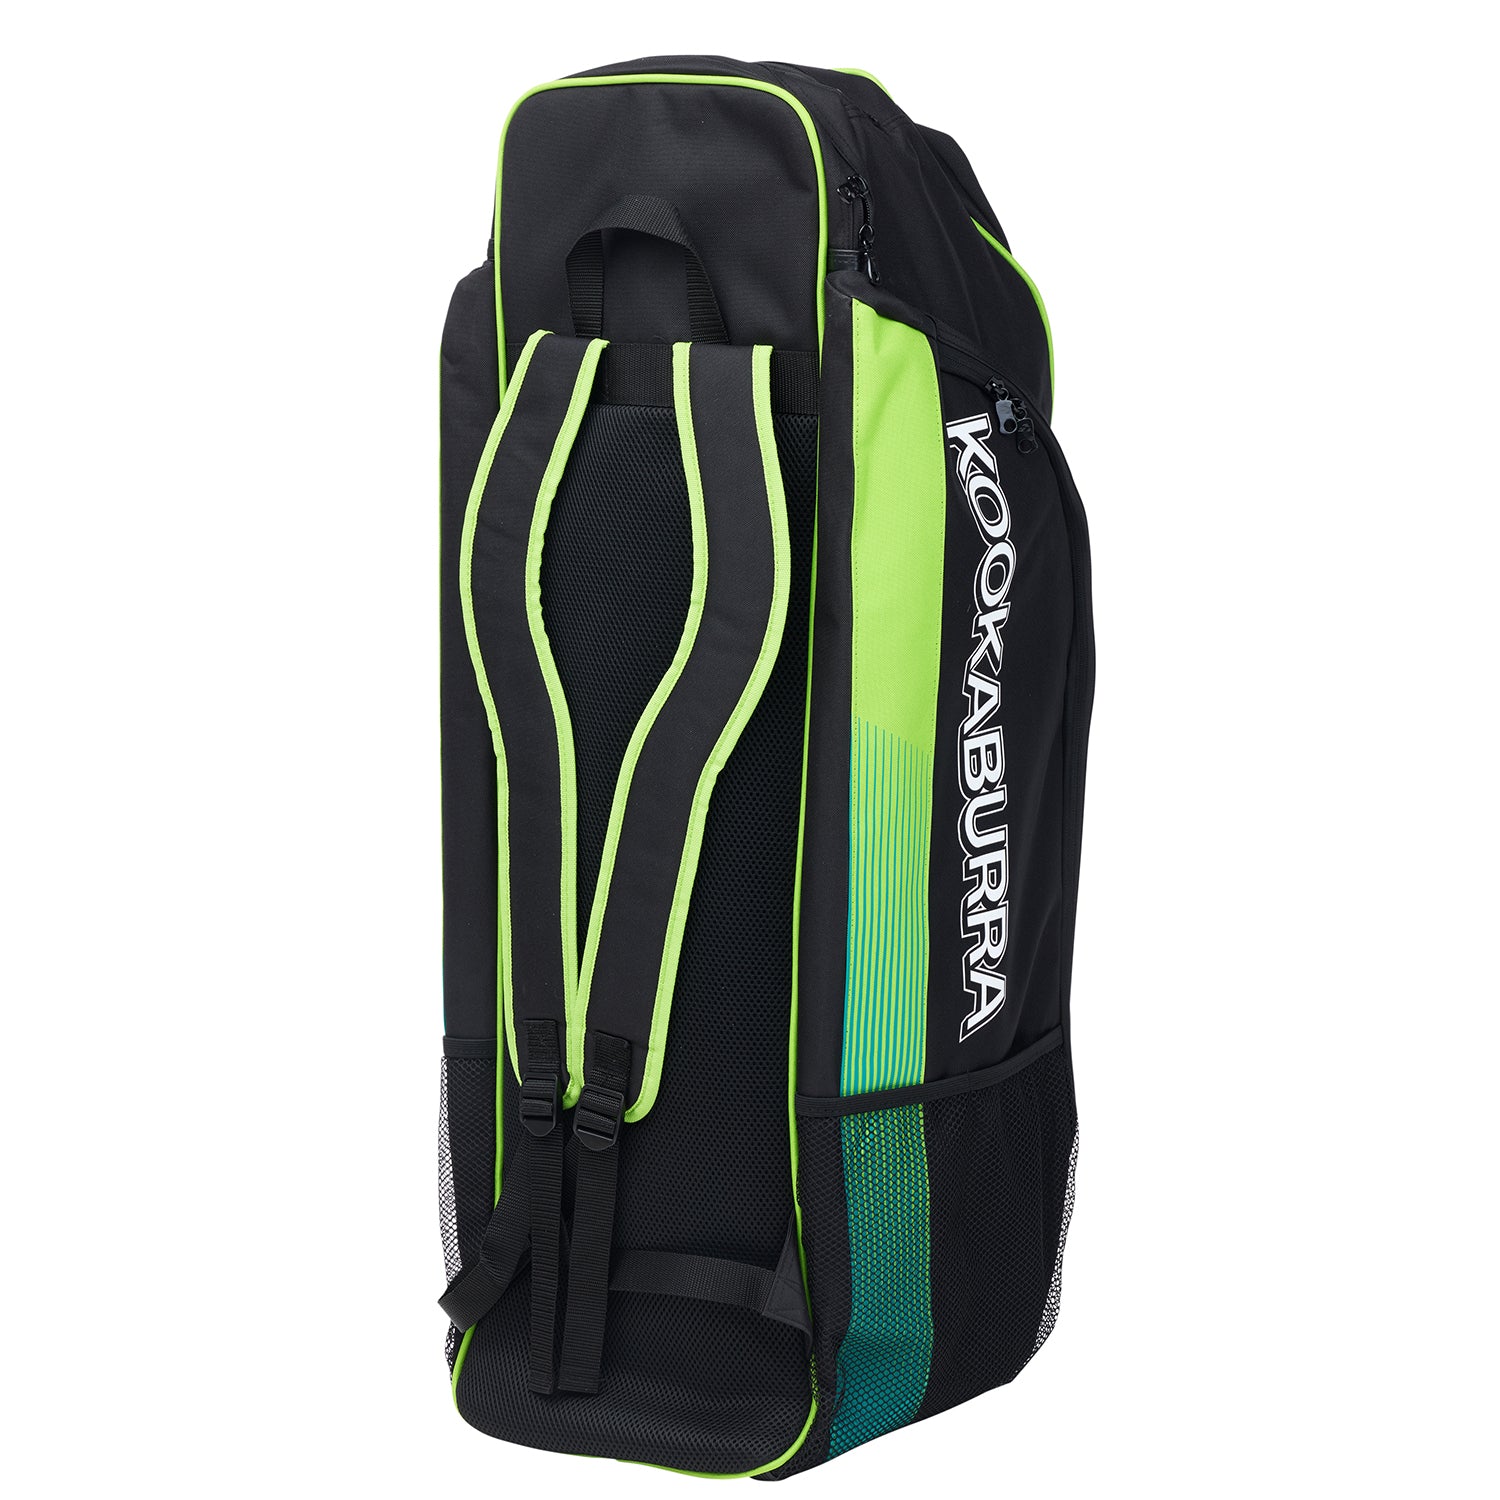 Kookaburra Pro 1.0 Cricket Duffle Bag